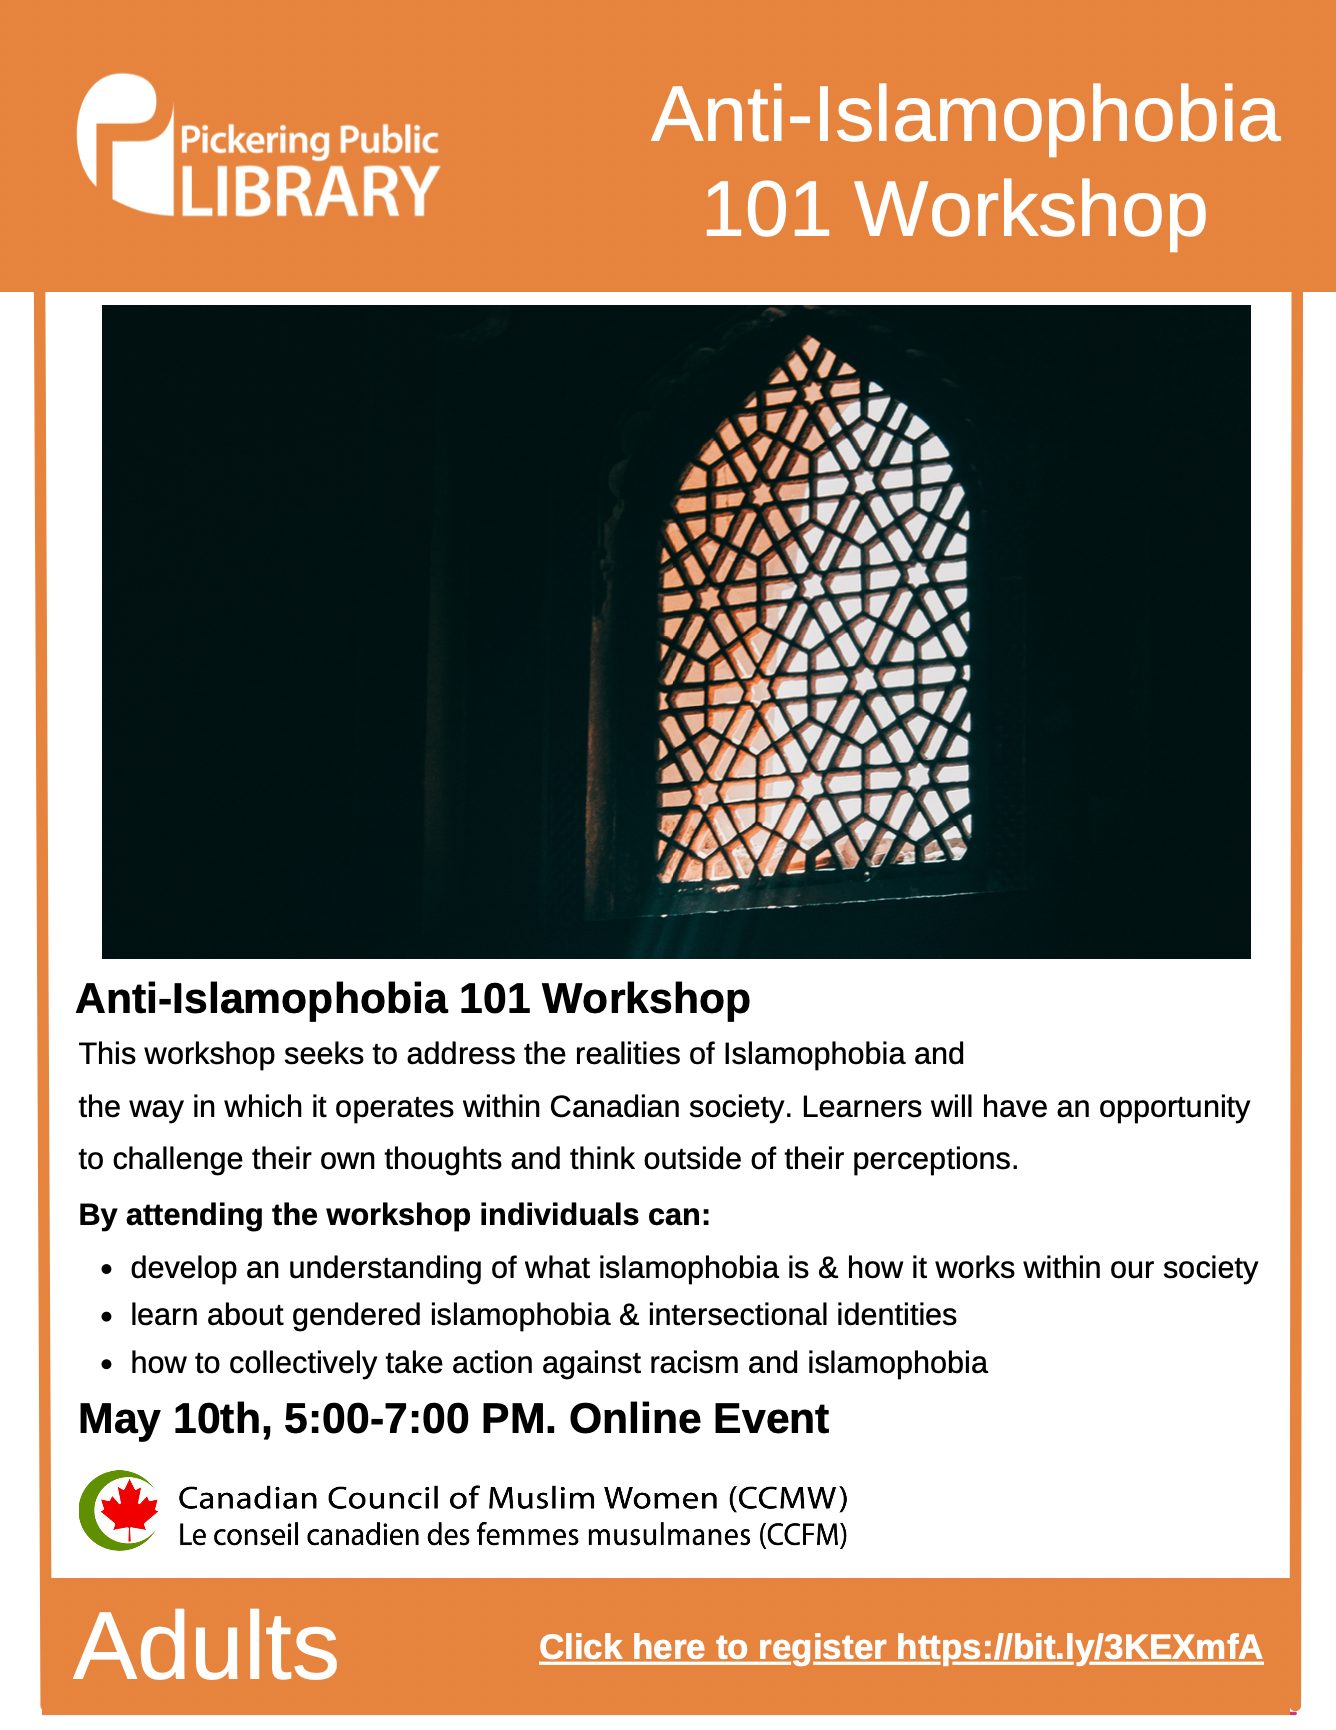 Anti-Islamophobia Workshop